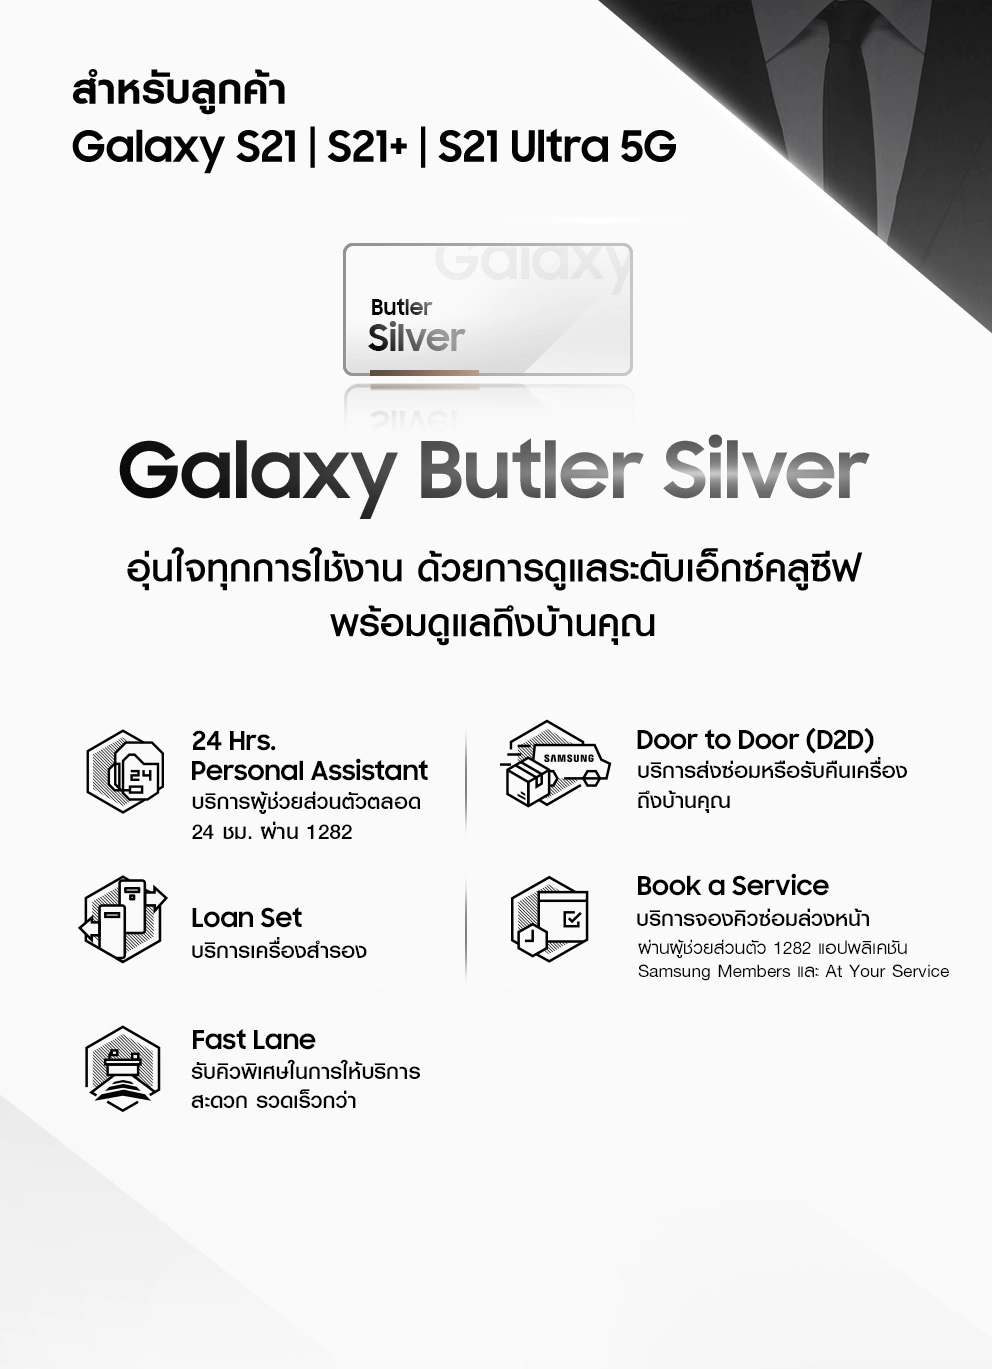 เช็กโปรโมชั่น Galaxy S21 Ultra 5G รับบริการ Galaxy Butler Silver สำหรับลูกค้า Galaxy S21, S21+ และ S21 Ultra 5G อุ่นใจทุกการใช้งาน